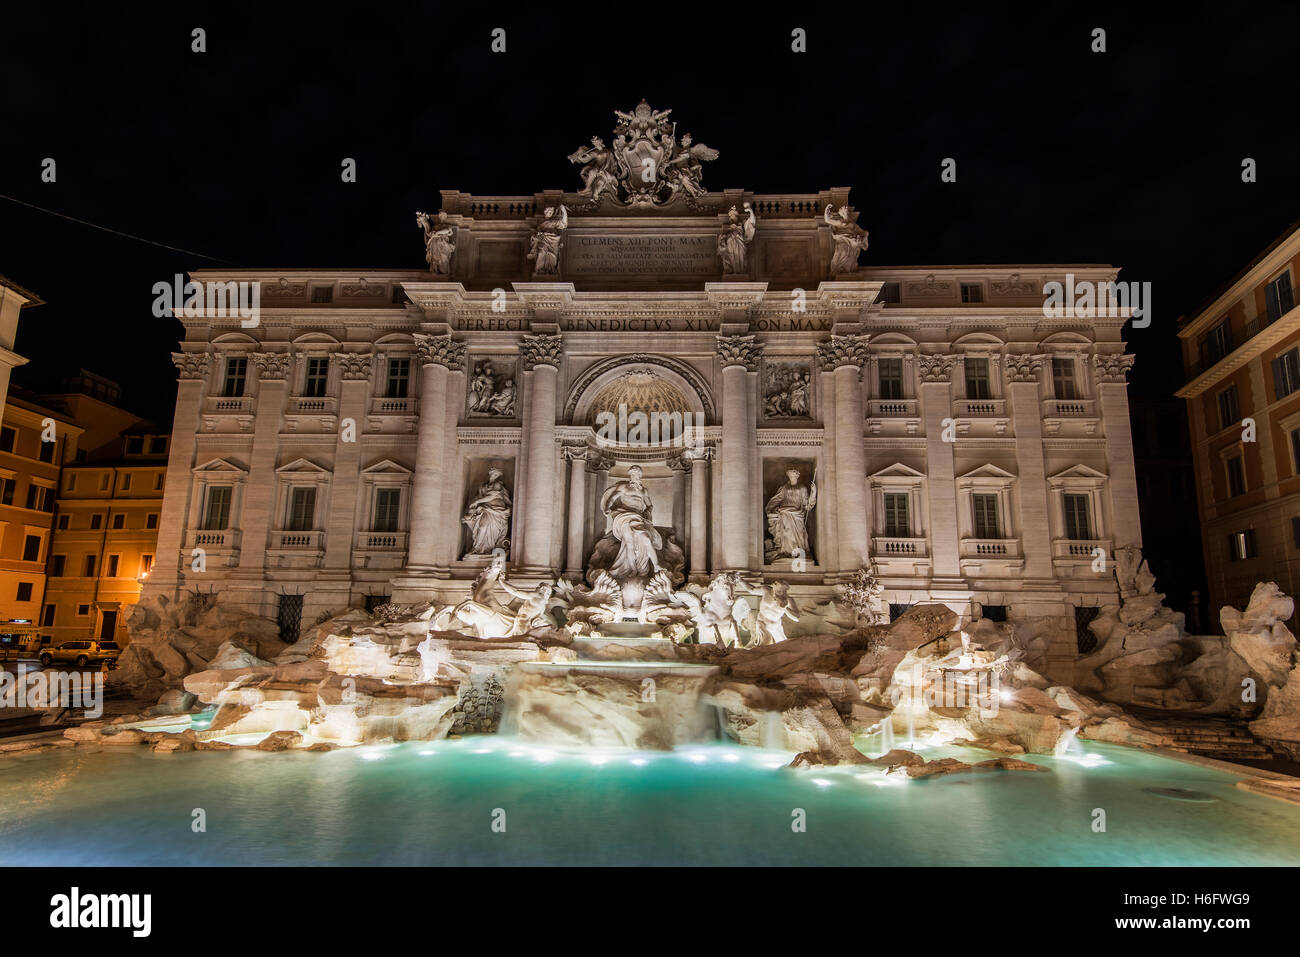 Vue nocturne de la fontaine de Trevi, Rome, Latium, Italie Banque D'Images